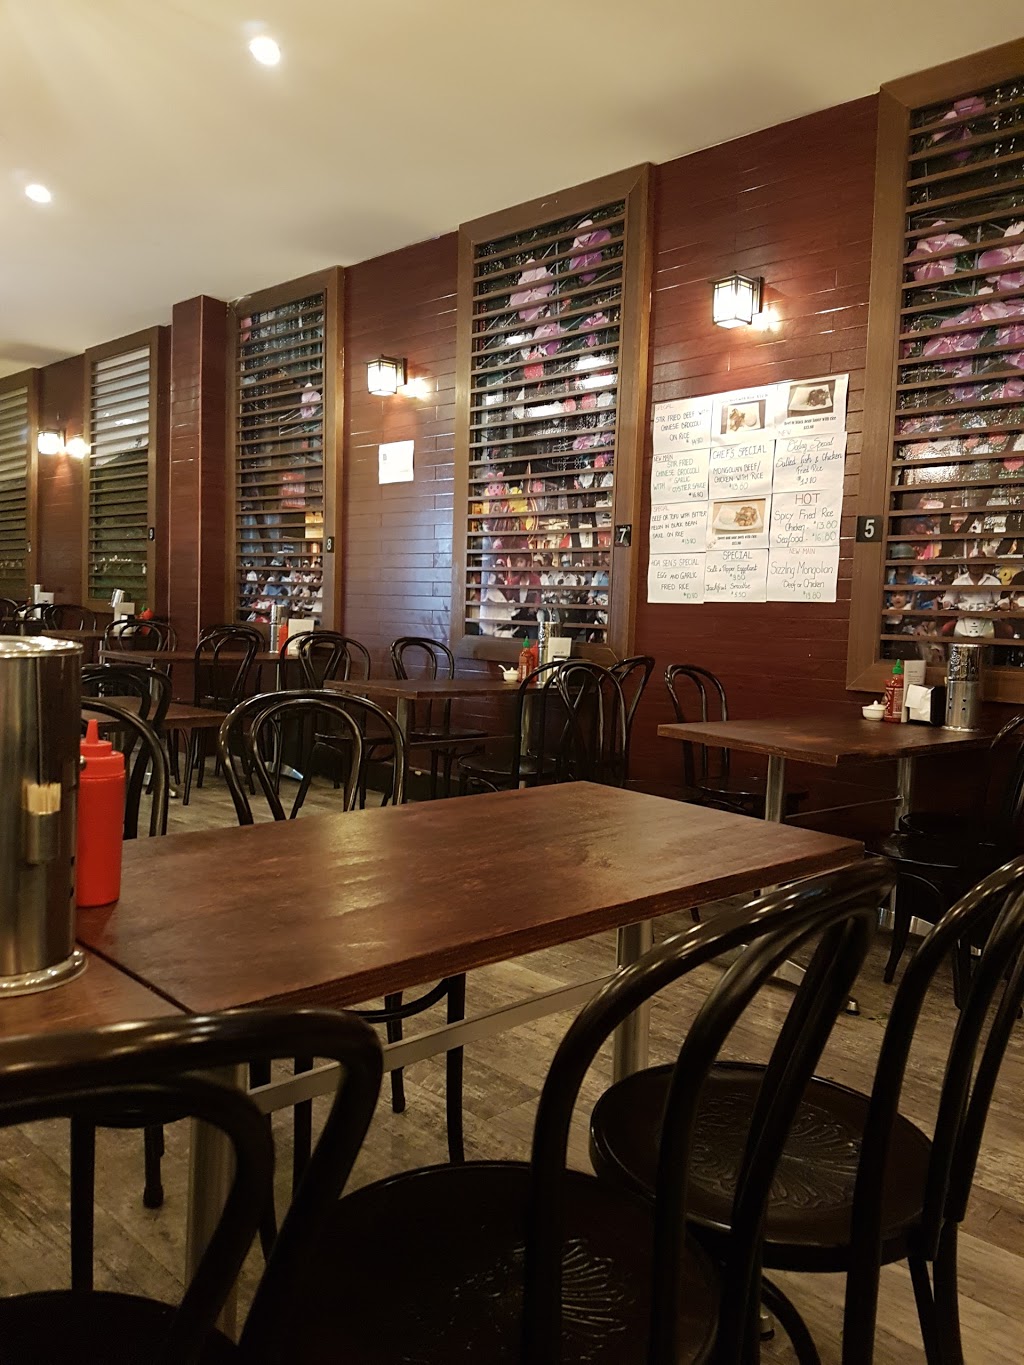 Hoa Sen | restaurant | 8 Anderson St, Yarraville VIC 3013, Australia | 0390785448 OR +61 3 9078 5448